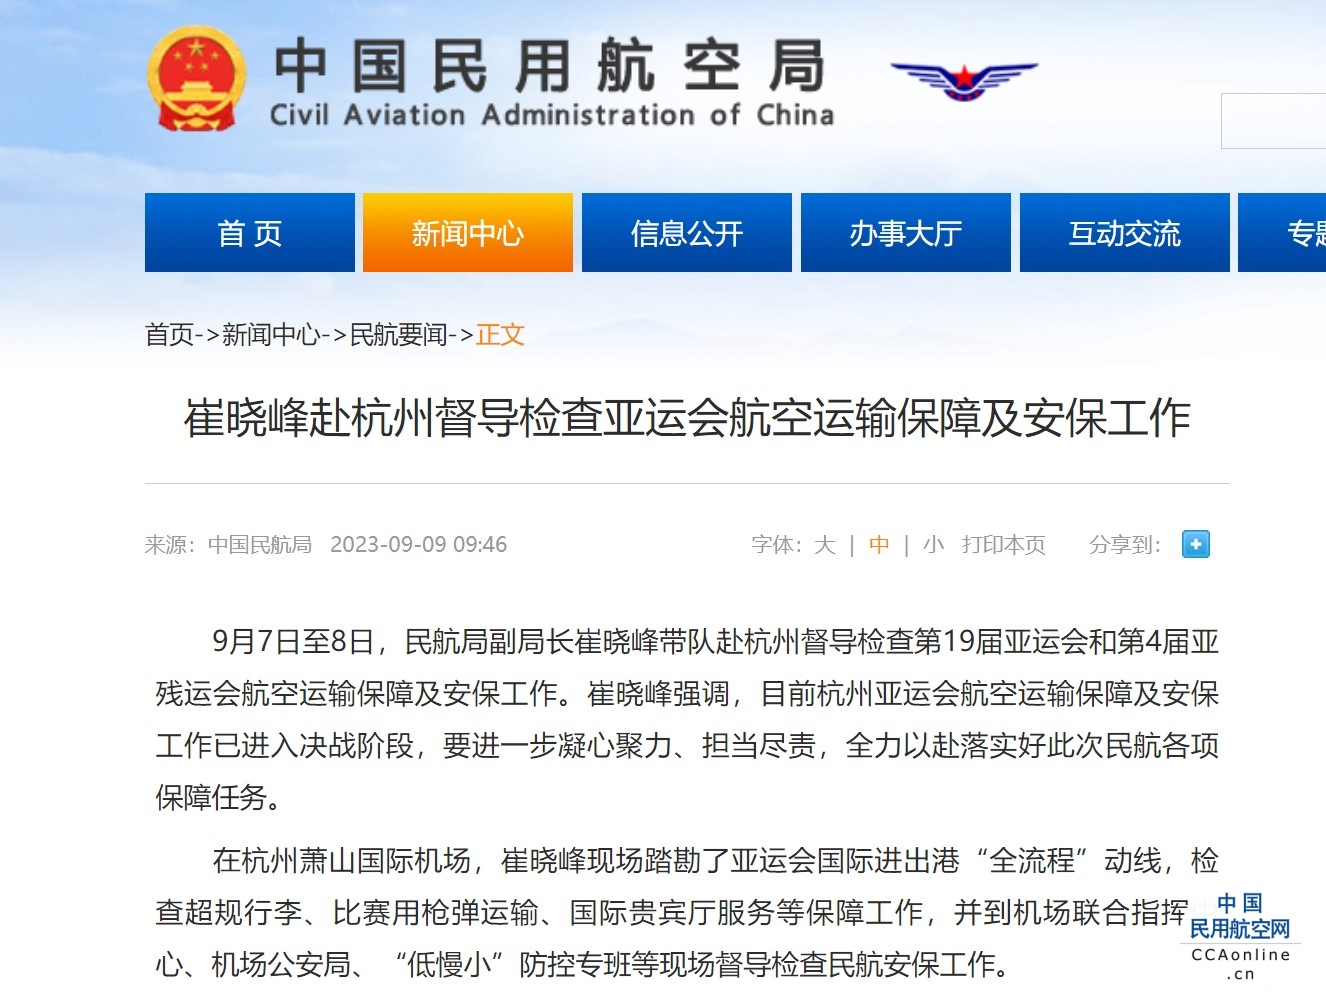 崔晓峰赴杭州督导检查亚运会航空运输保障及安保工作